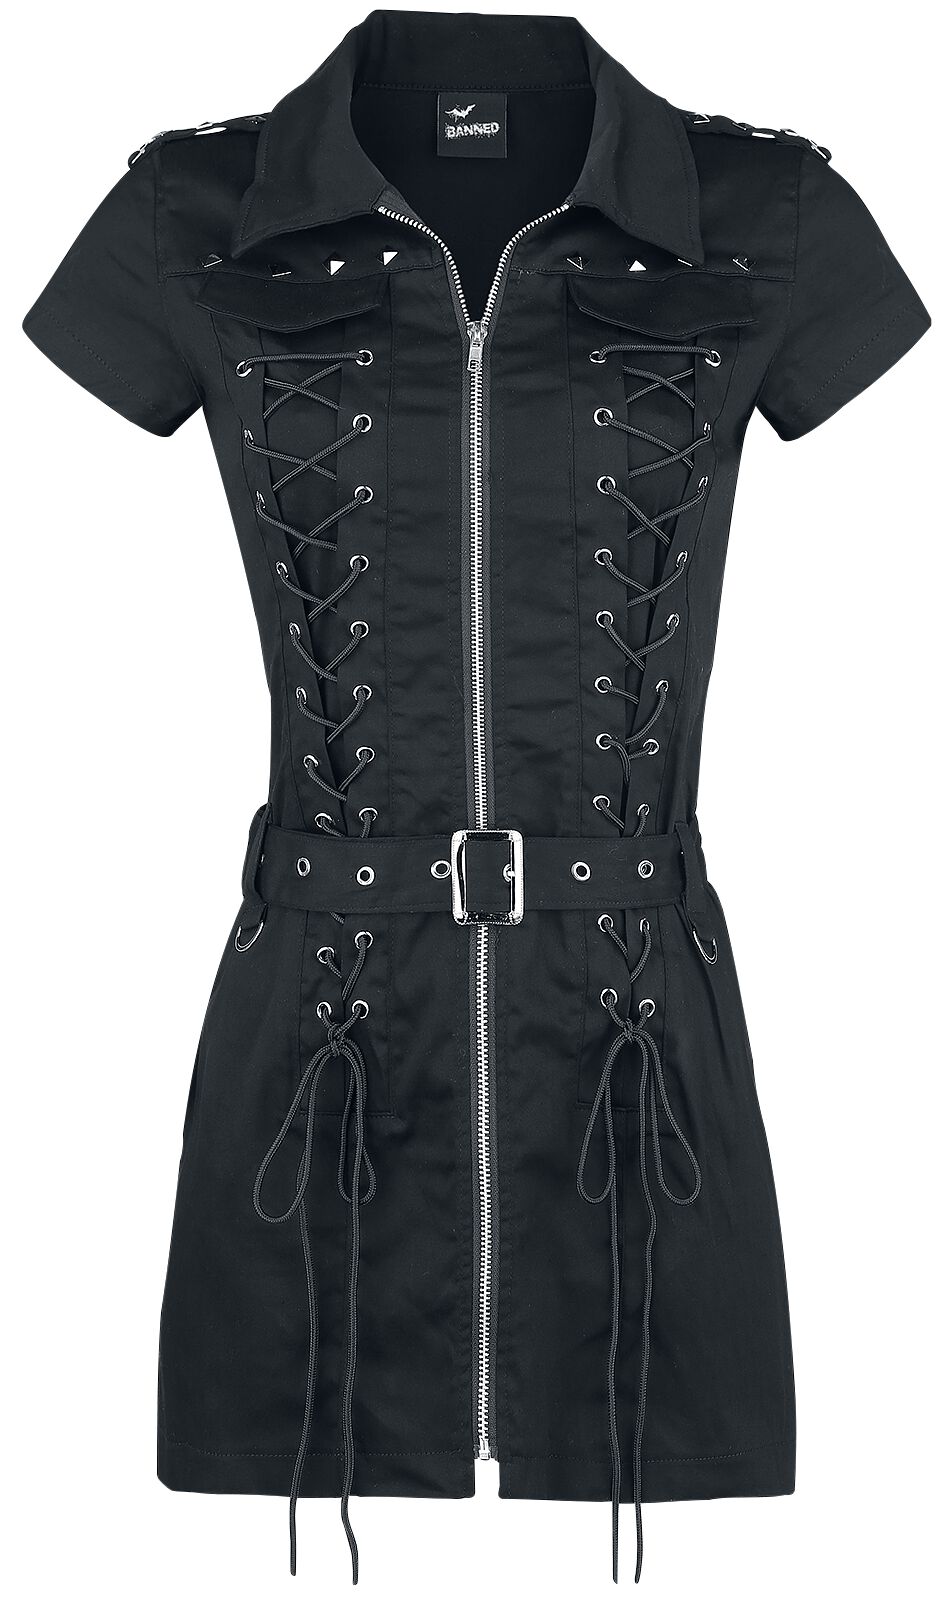 Banned Alternative - Gothic Kurzes Kleid - Mod Dress - XS bis XL - für Damen - Größe XS - schwarz